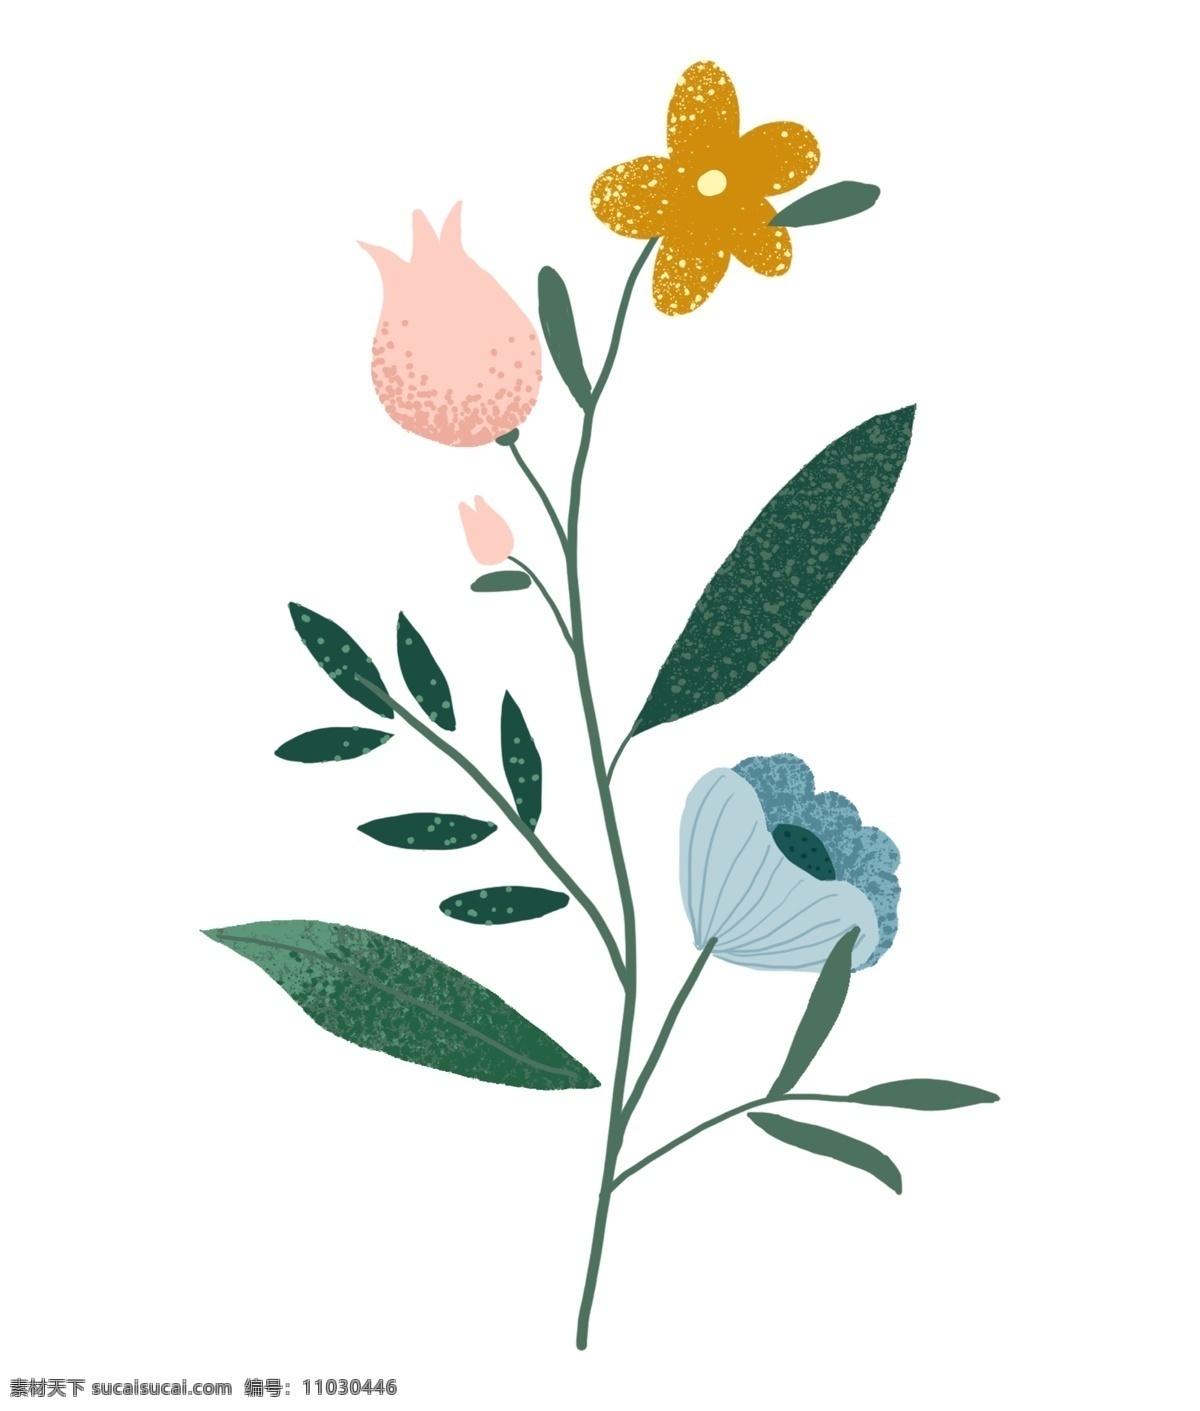 彩色 花朵 装饰 插画 彩色的花朵 绿色的叶子 植物装饰 卡通花朵 花朵装饰 鲜花花朵 花朵插画